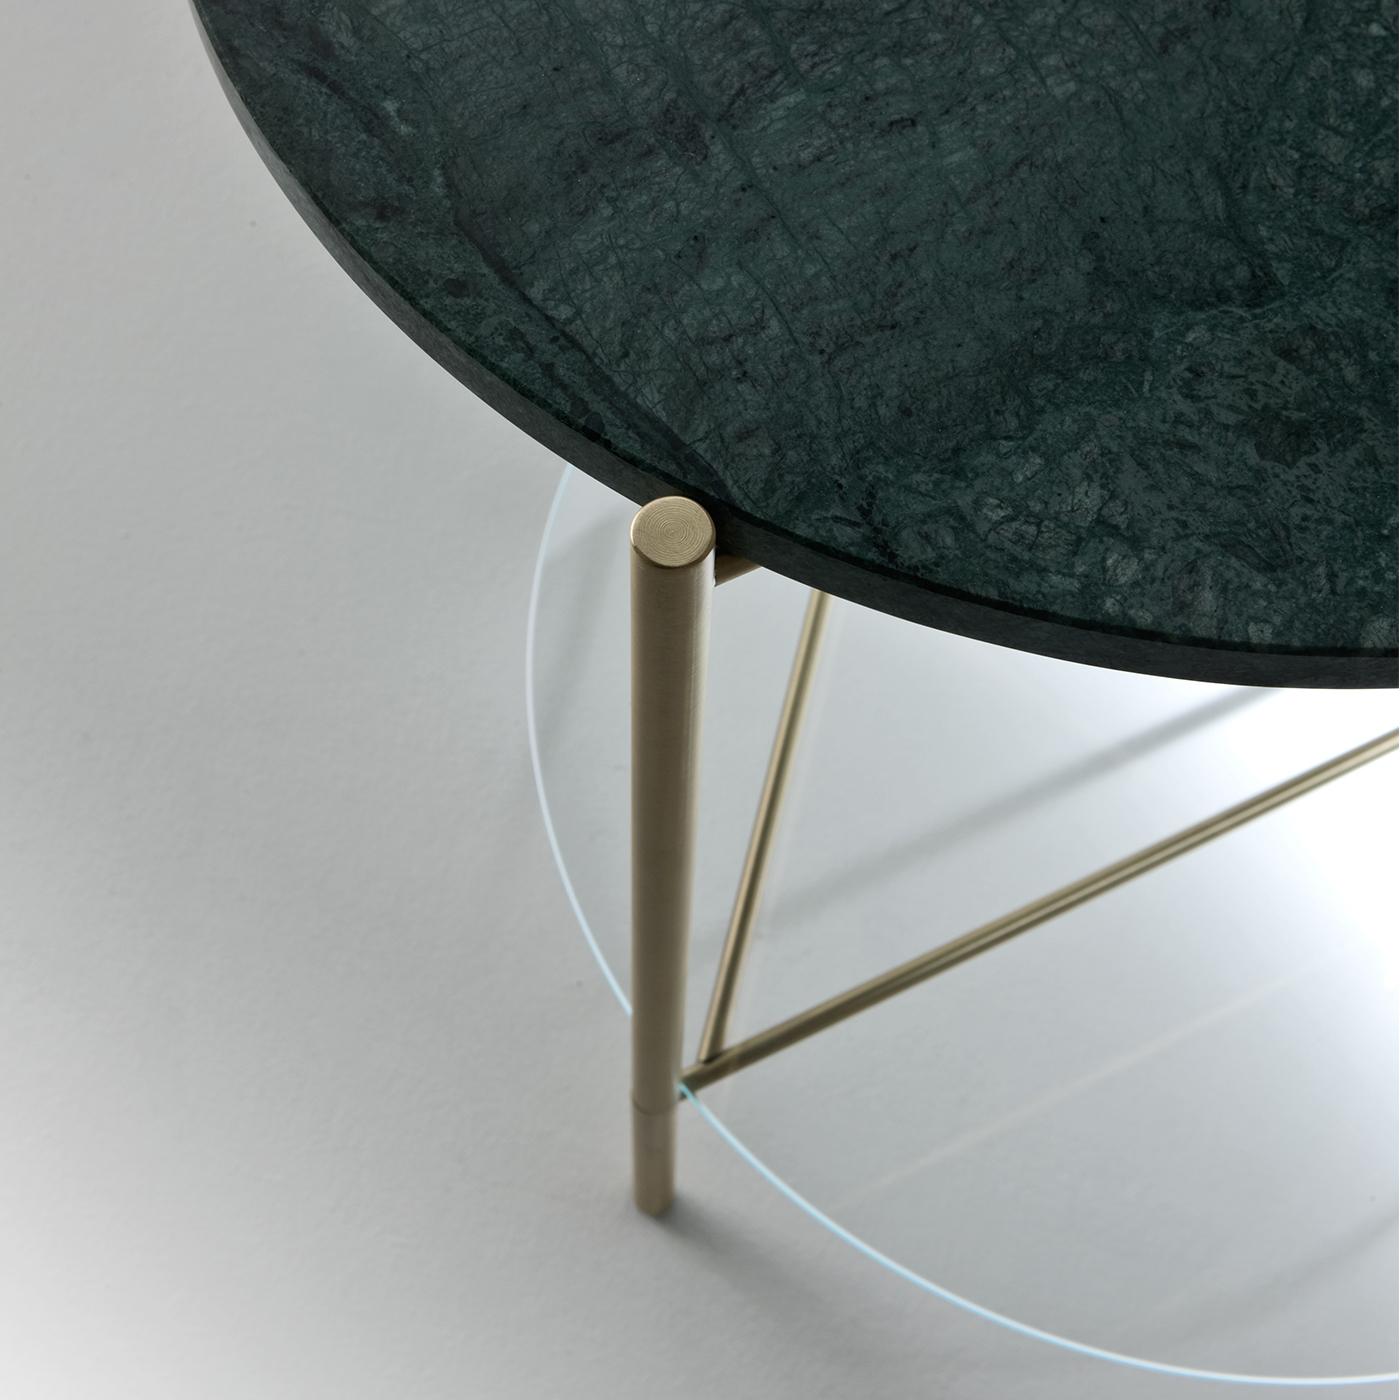 La table d'appoint Echo, simple et élégante, est fabriquée en laiton satiné, avec une étagère inférieure en verre extralight et un plateau en marbre vert Guatamala poli mat. Les tables Echo sont disponibles avec une ou deux tablettes dans